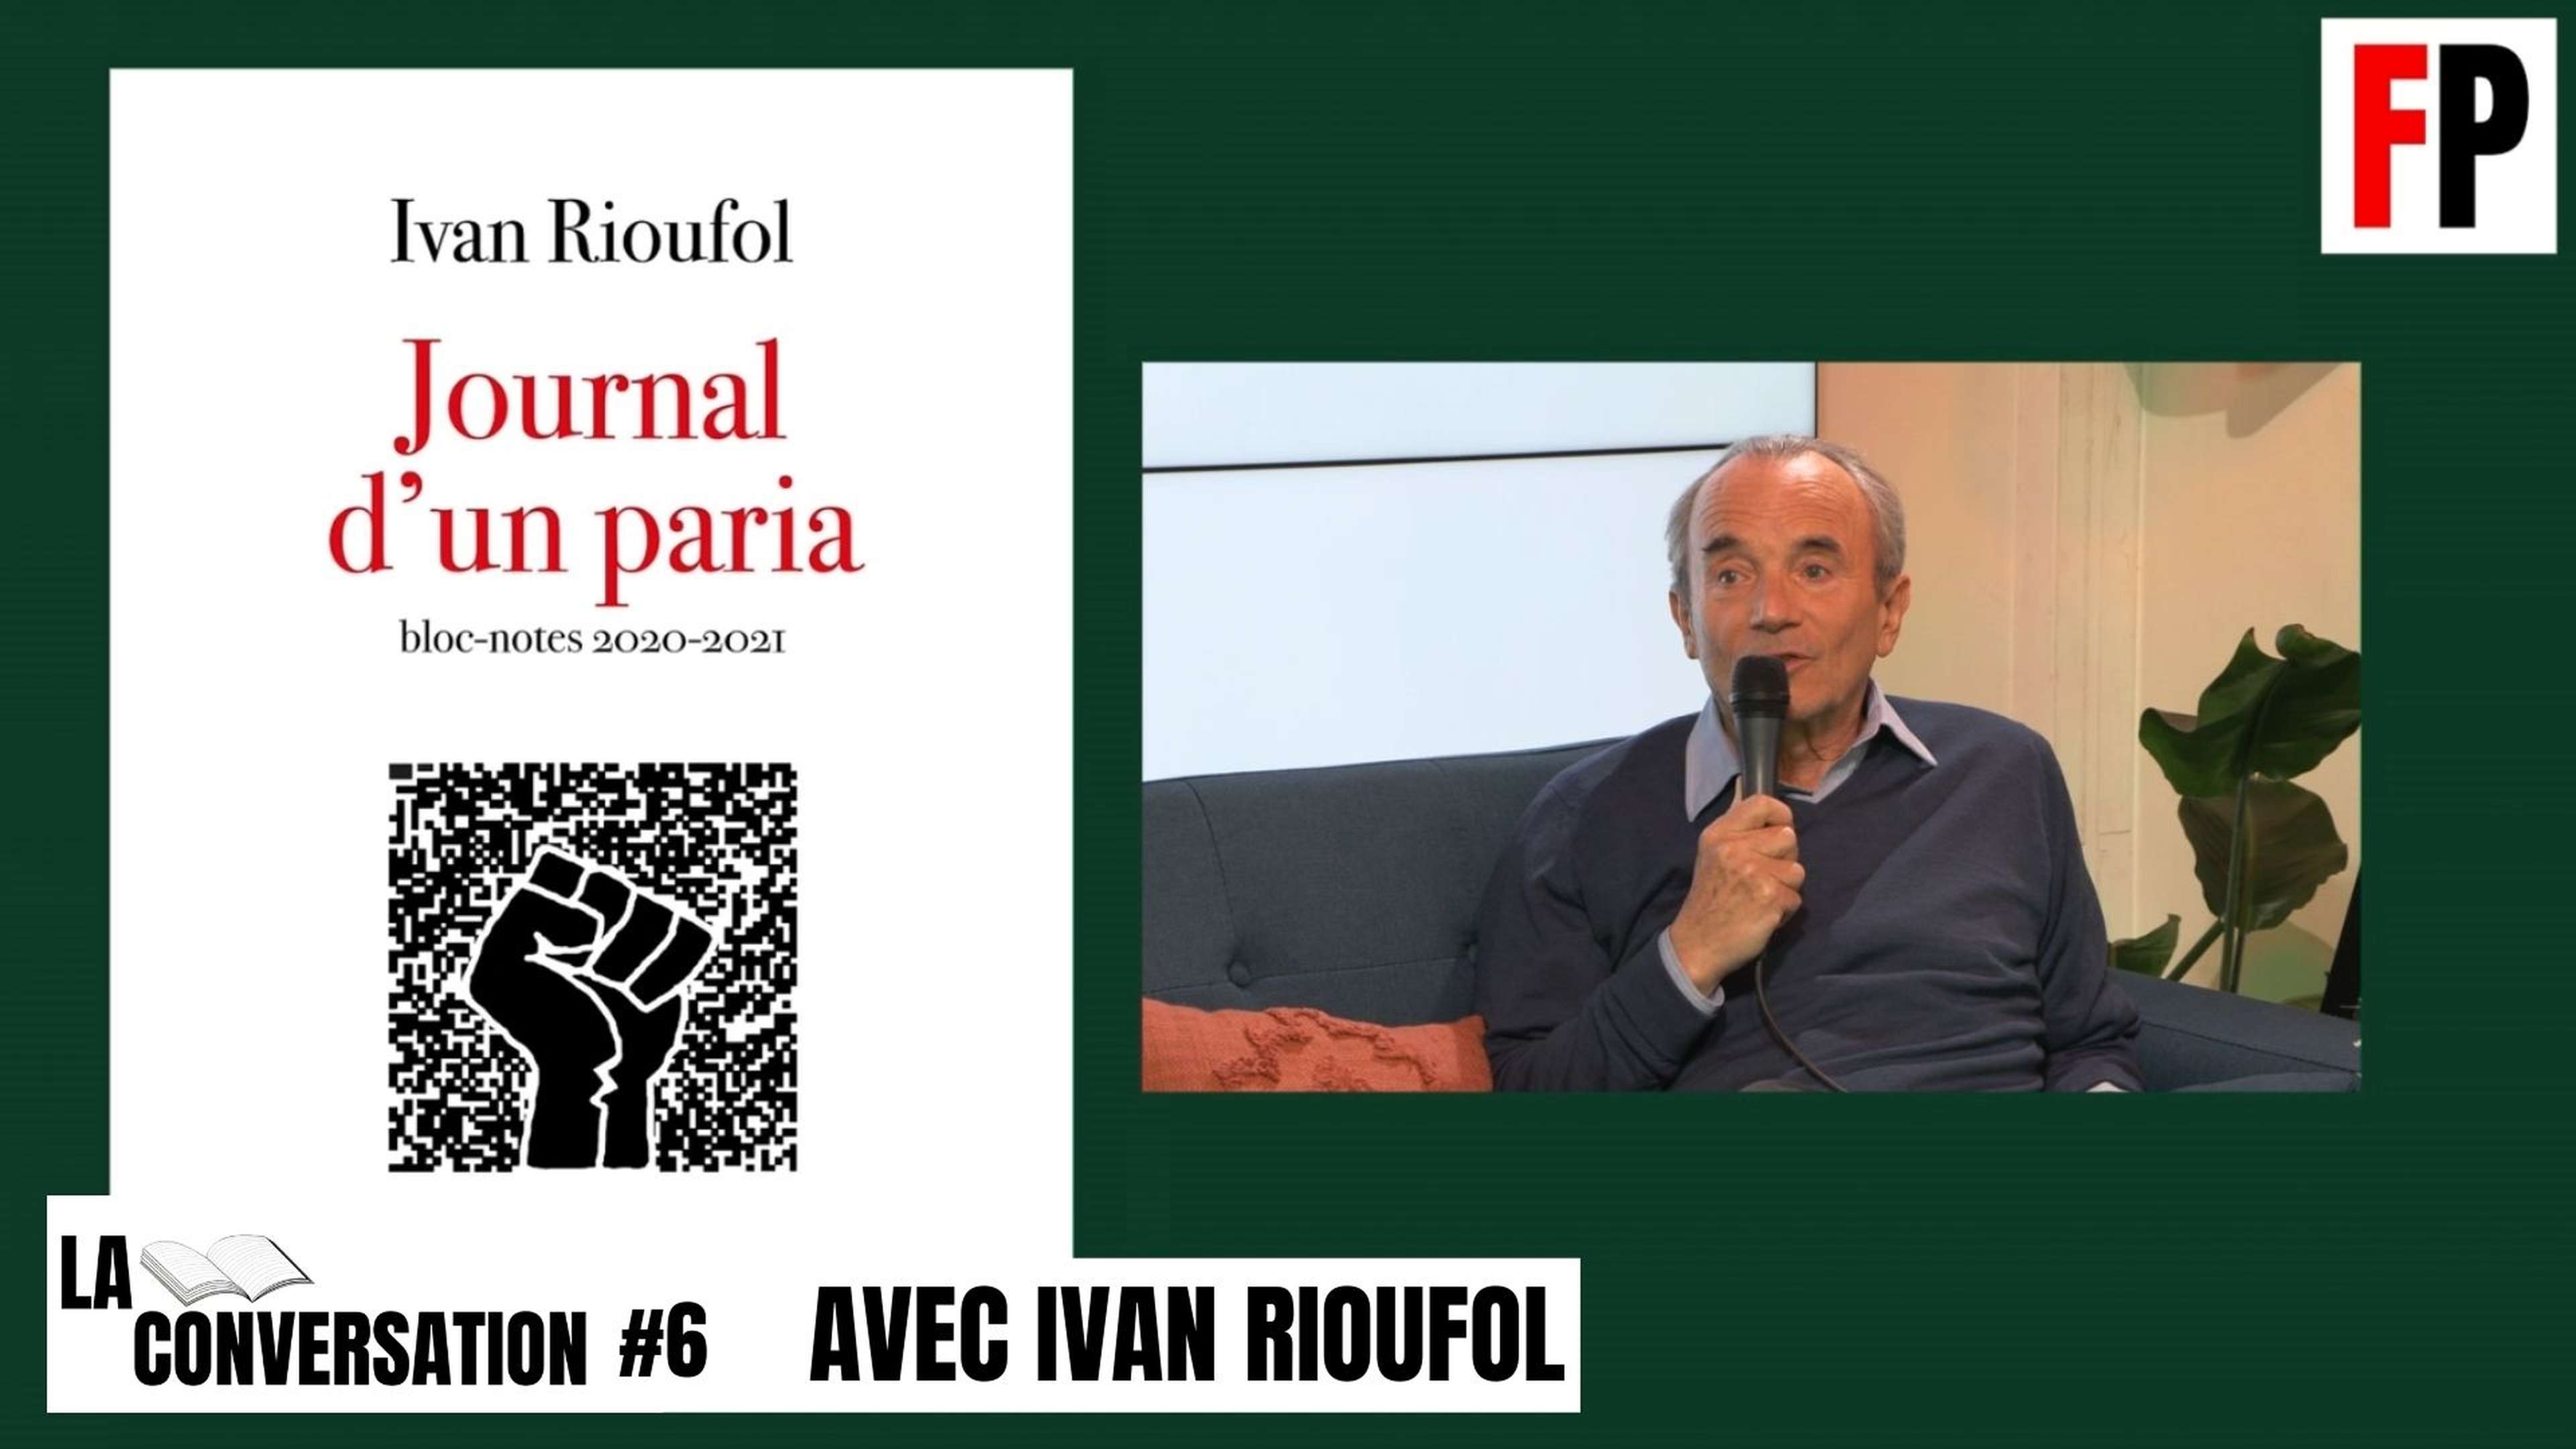 La conversation #6 : Ivan Rioufol présente son "Journal d'un paria"